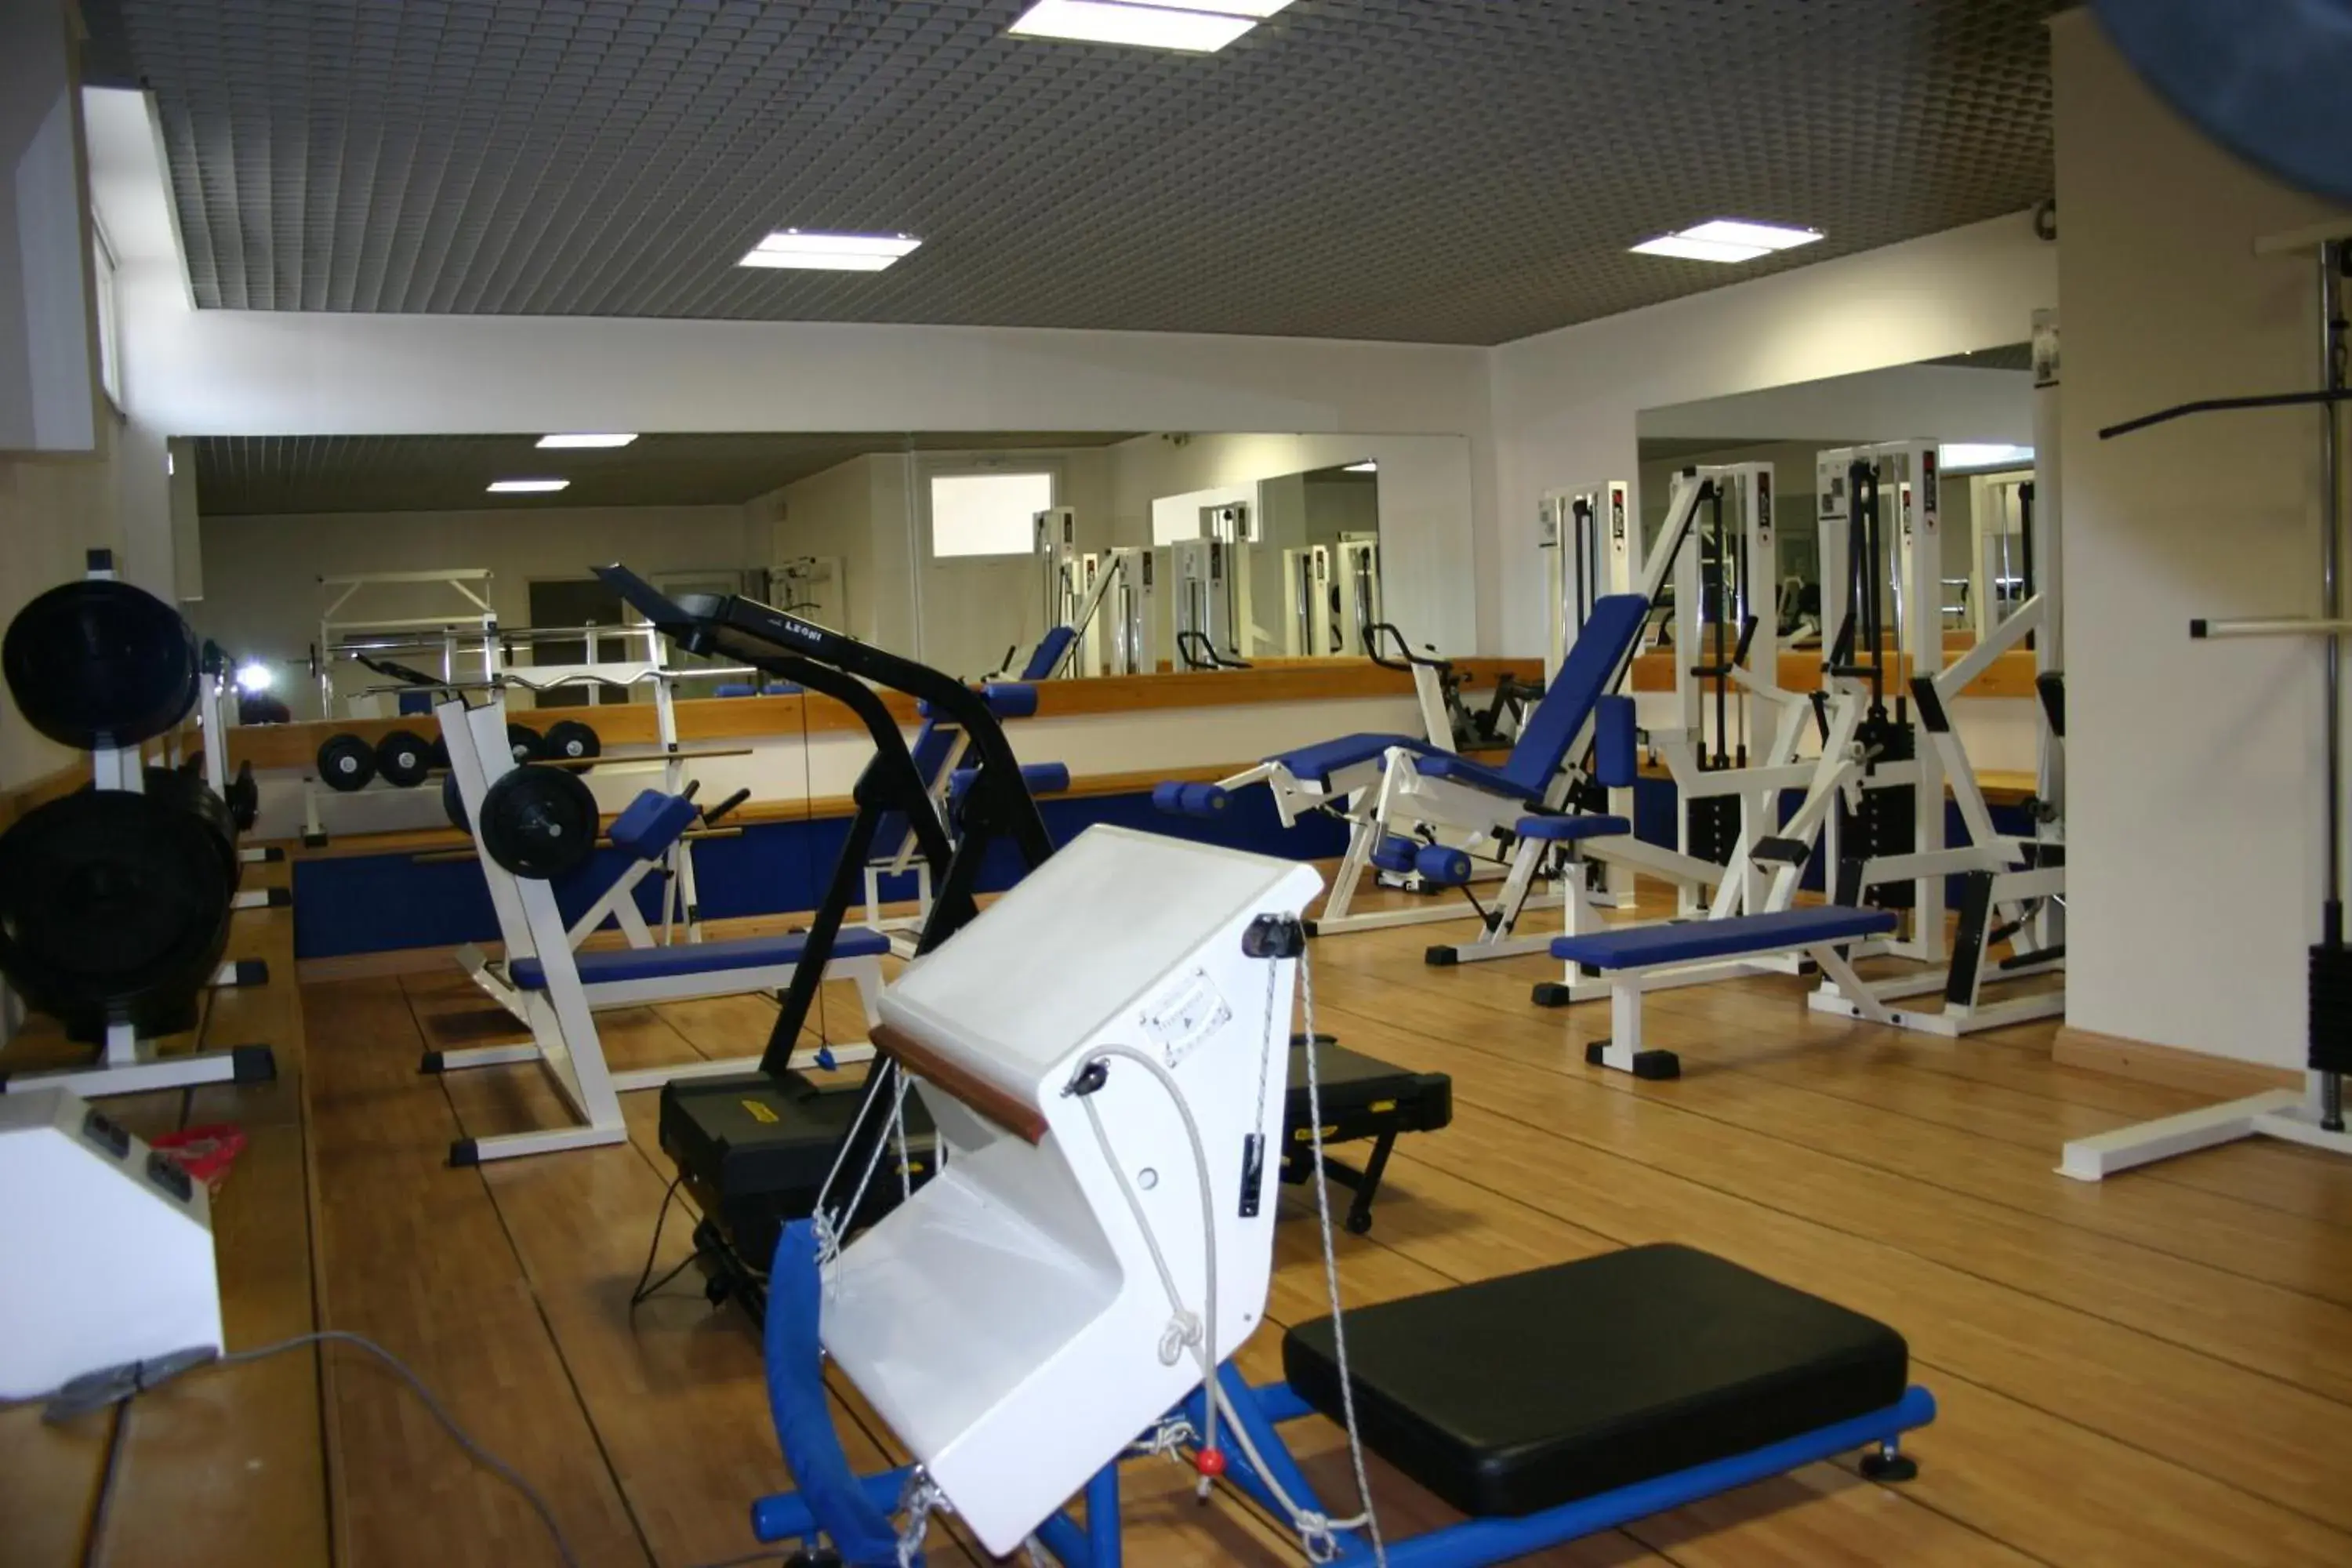 Fitness centre/facilities, Fitness Center/Facilities in Sporthotel Villa Stella